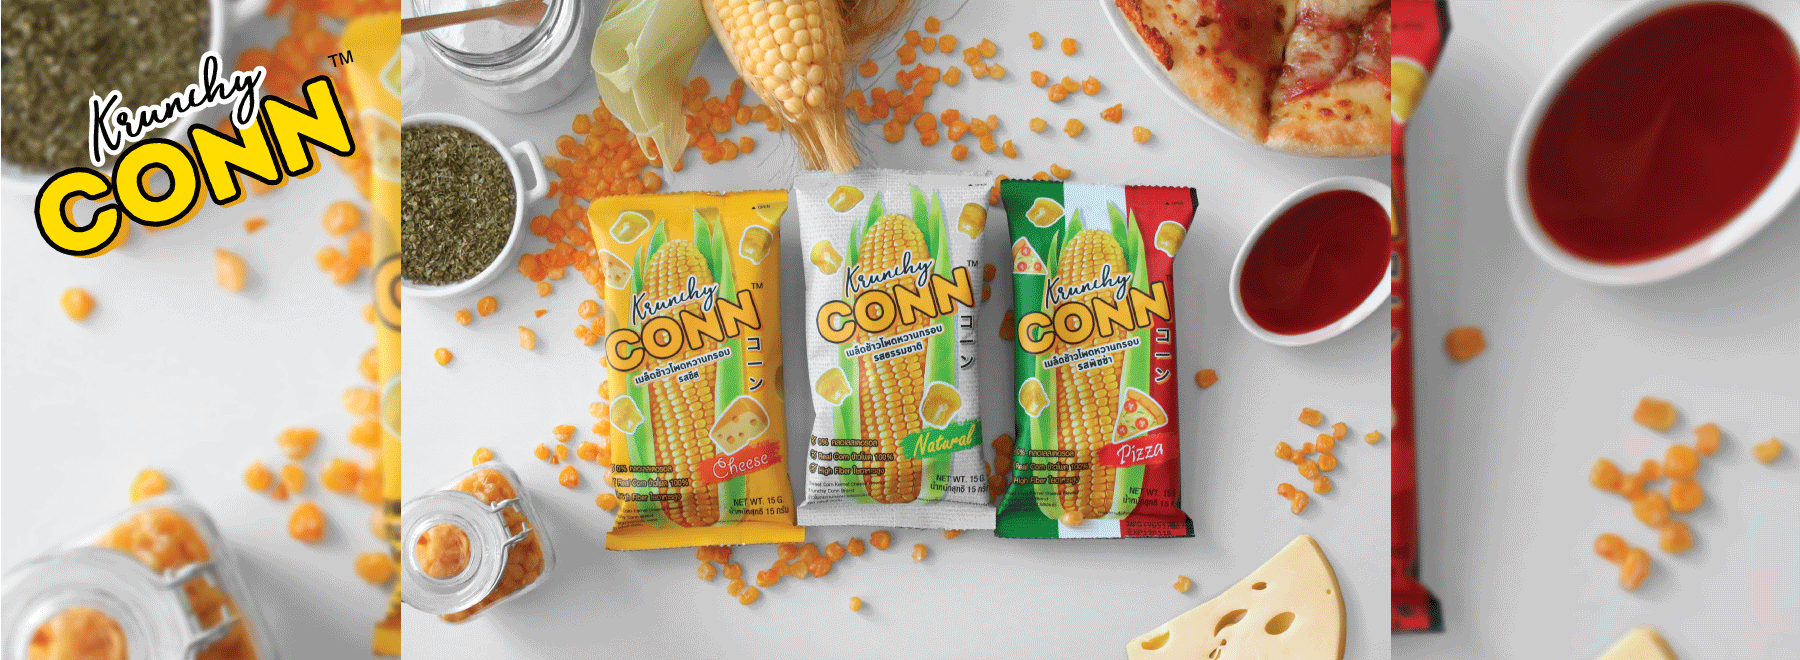 Crispy sweet corn kernal